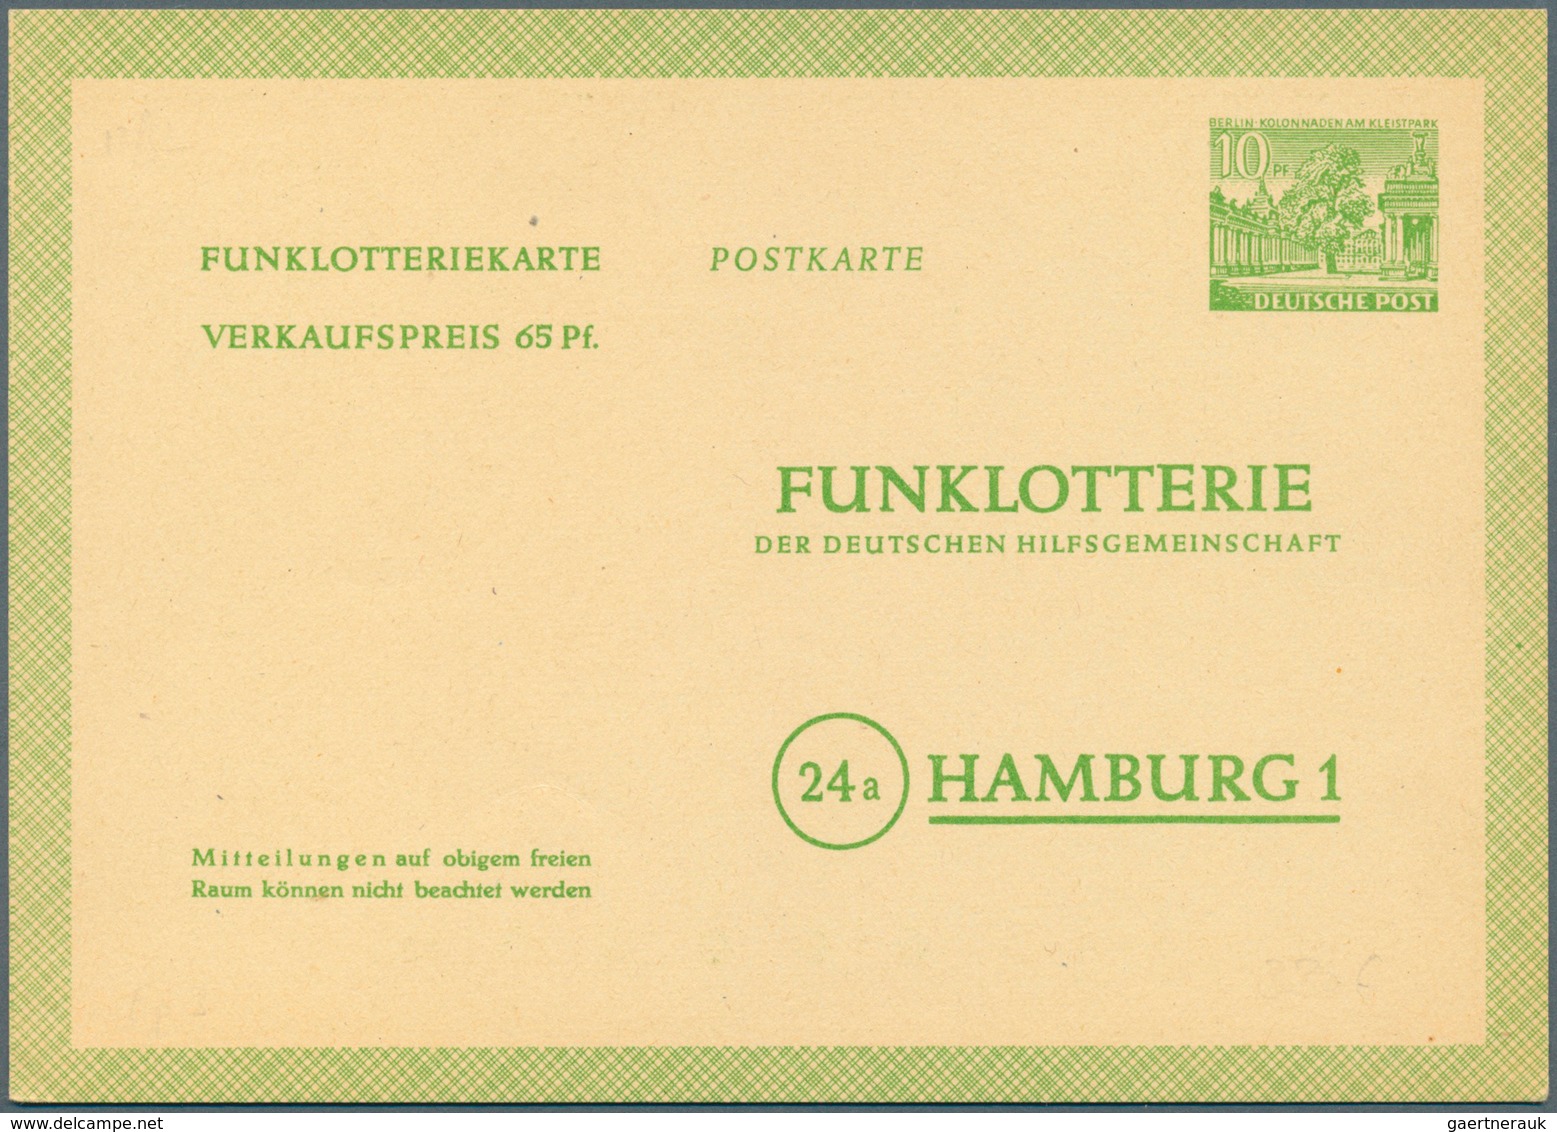 Berlin - Ganzsachen: 1948/1967. Spannende Sammlung von 109 nur versch. POSTKARTEN, oft doppelt gesam